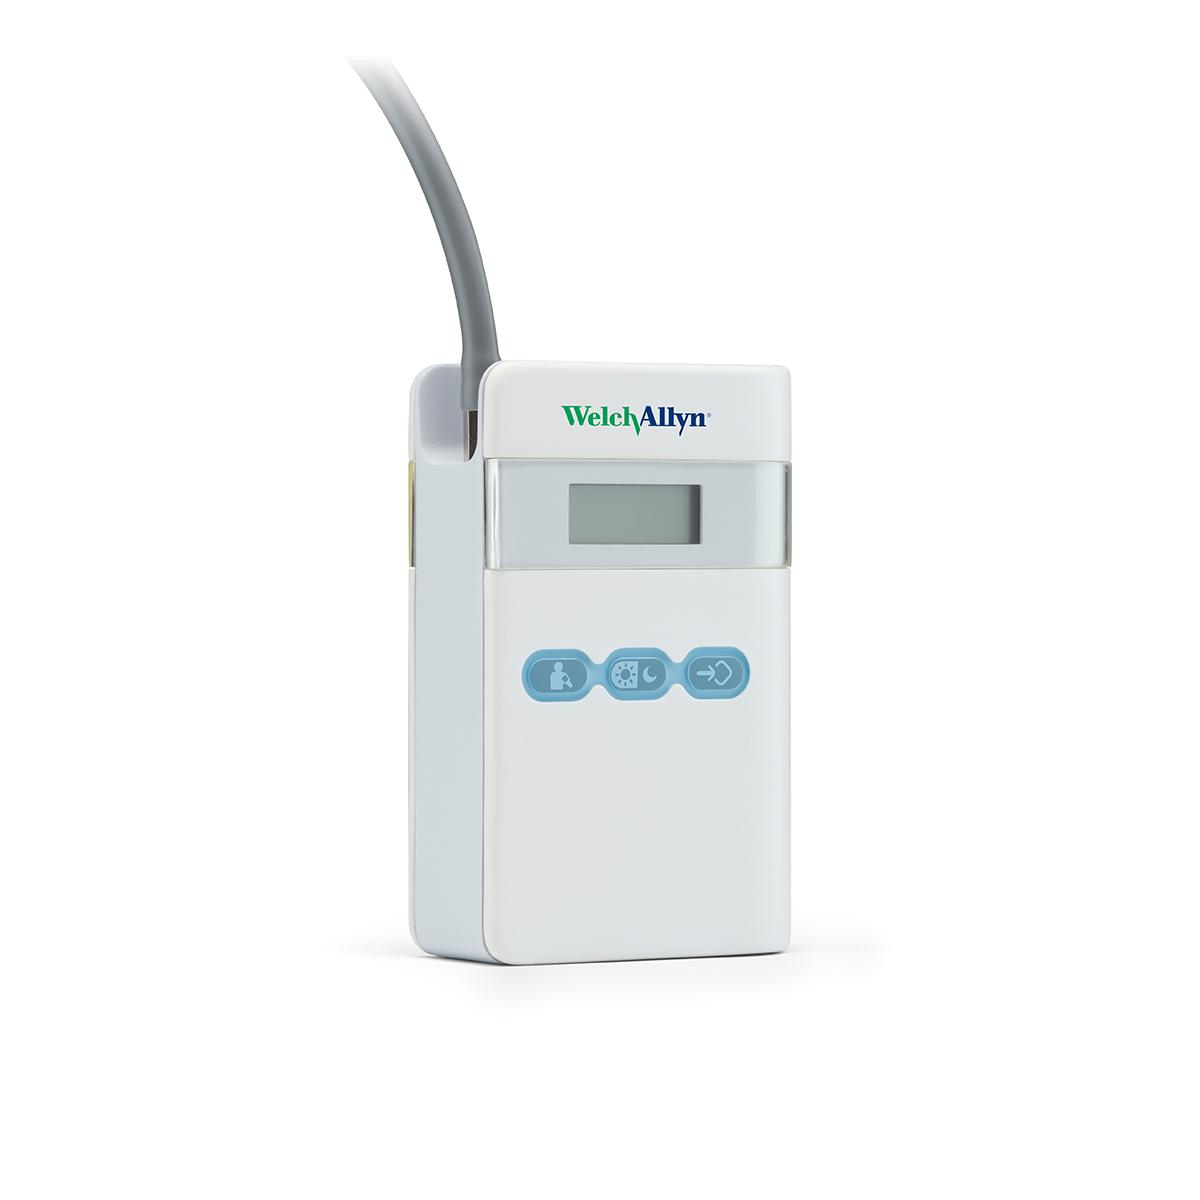 ABPM 7100 Blodtrycksmätare för 24-timmarsmätning, 3/4-vy, vänster sida